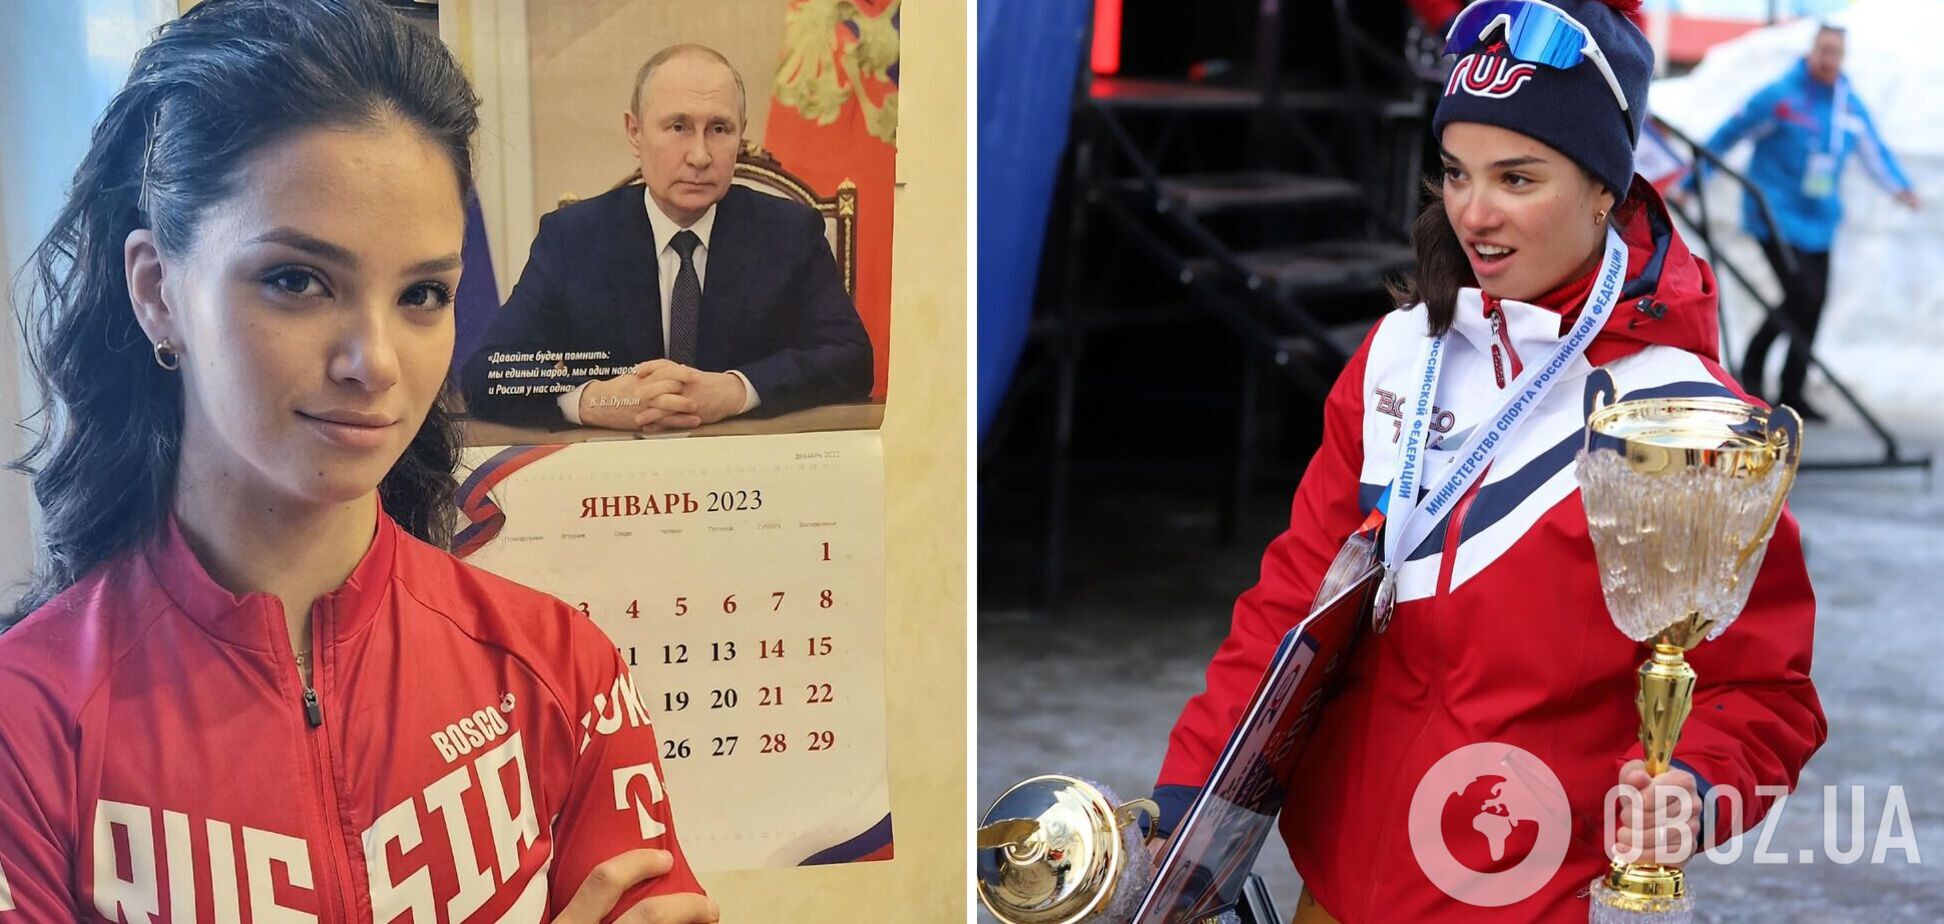 Олимпийскую чемпионку из России назвали 'мерзостью' в ответ на слова про Путина